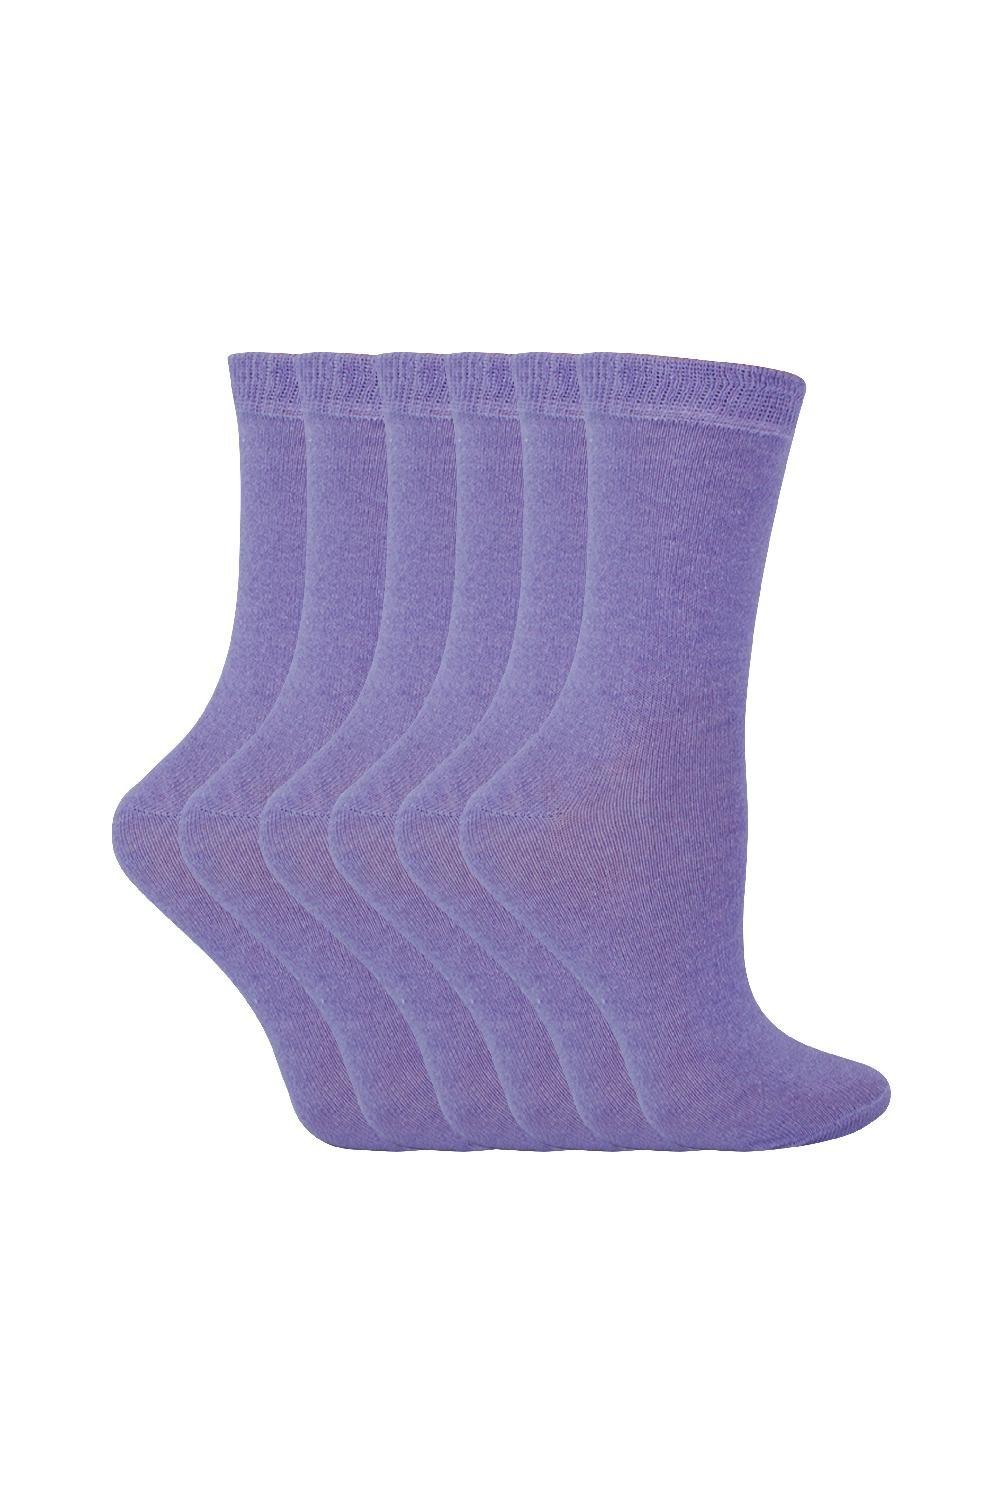 6 пар однотонных повседневных хлопковых носков Sock Snob, фиолетовый